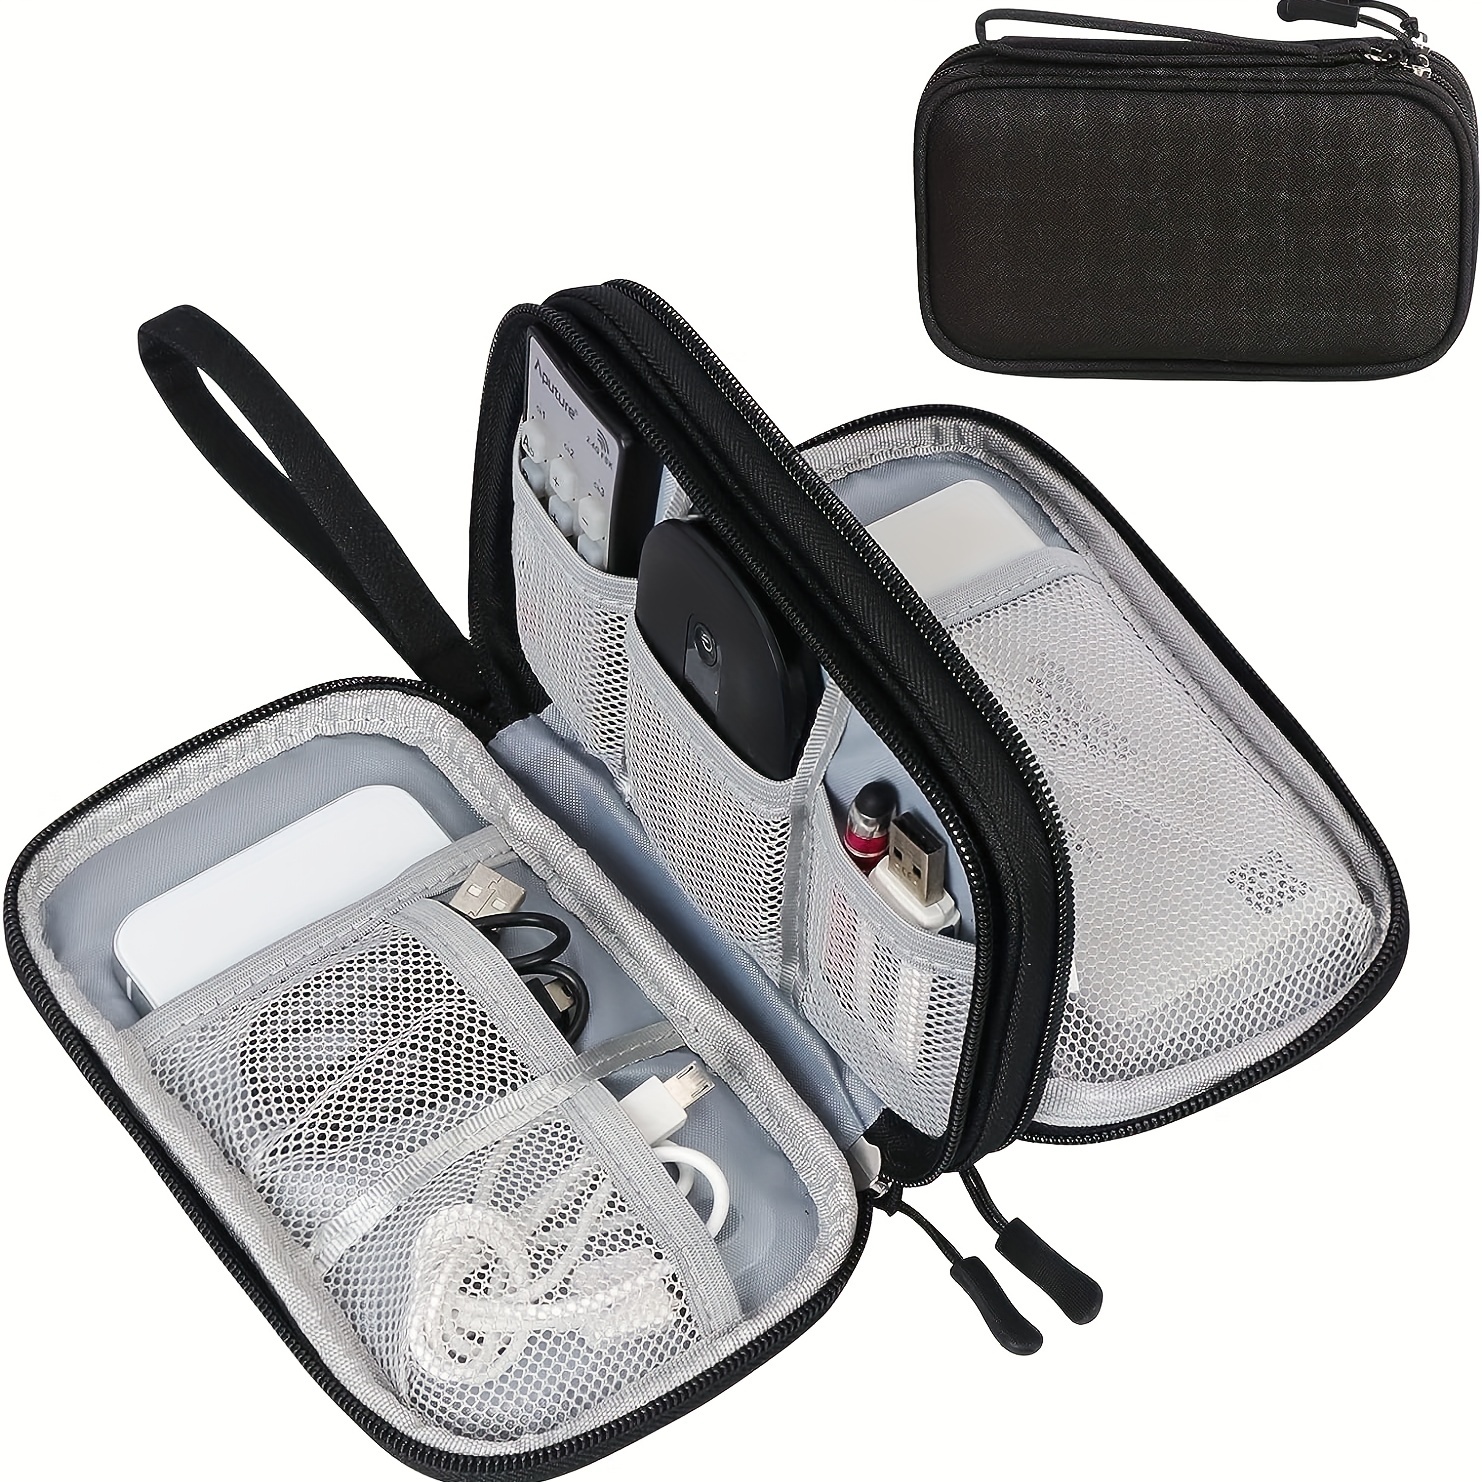 Organisateur d'accessoires électroniques organisateurs de câbles de voyage  universels sac de rangement étui pratique pour adaptateur cordon chargeur  écouteur 